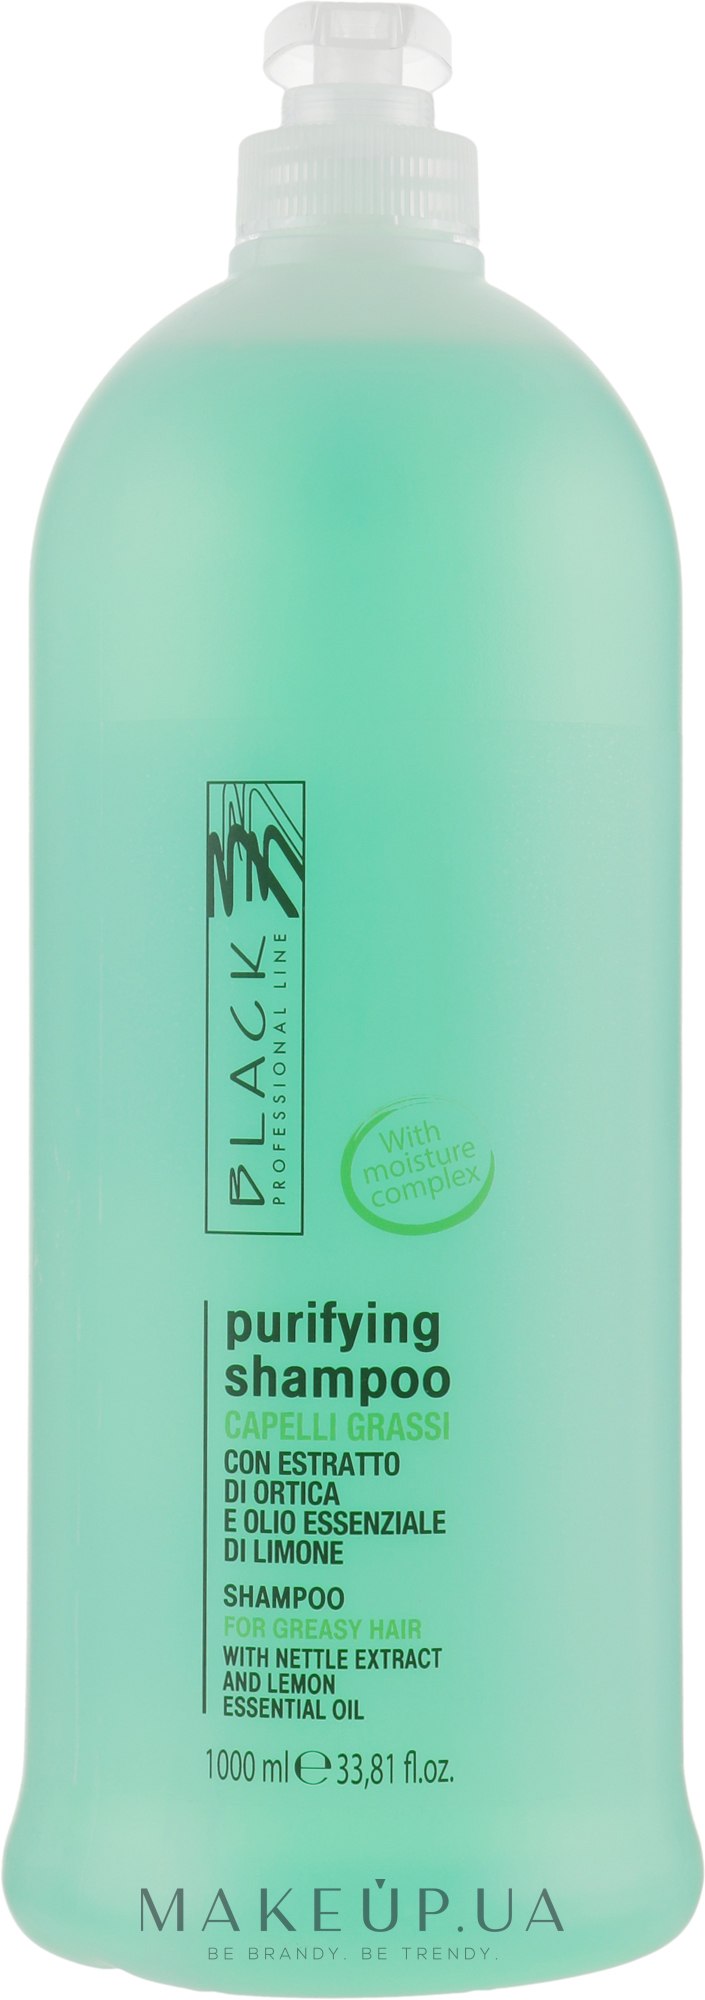 Нормализующий шампунь для жирных волос - Black Professional Line Sebum-Balancing Shampoo  — фото 1000ml